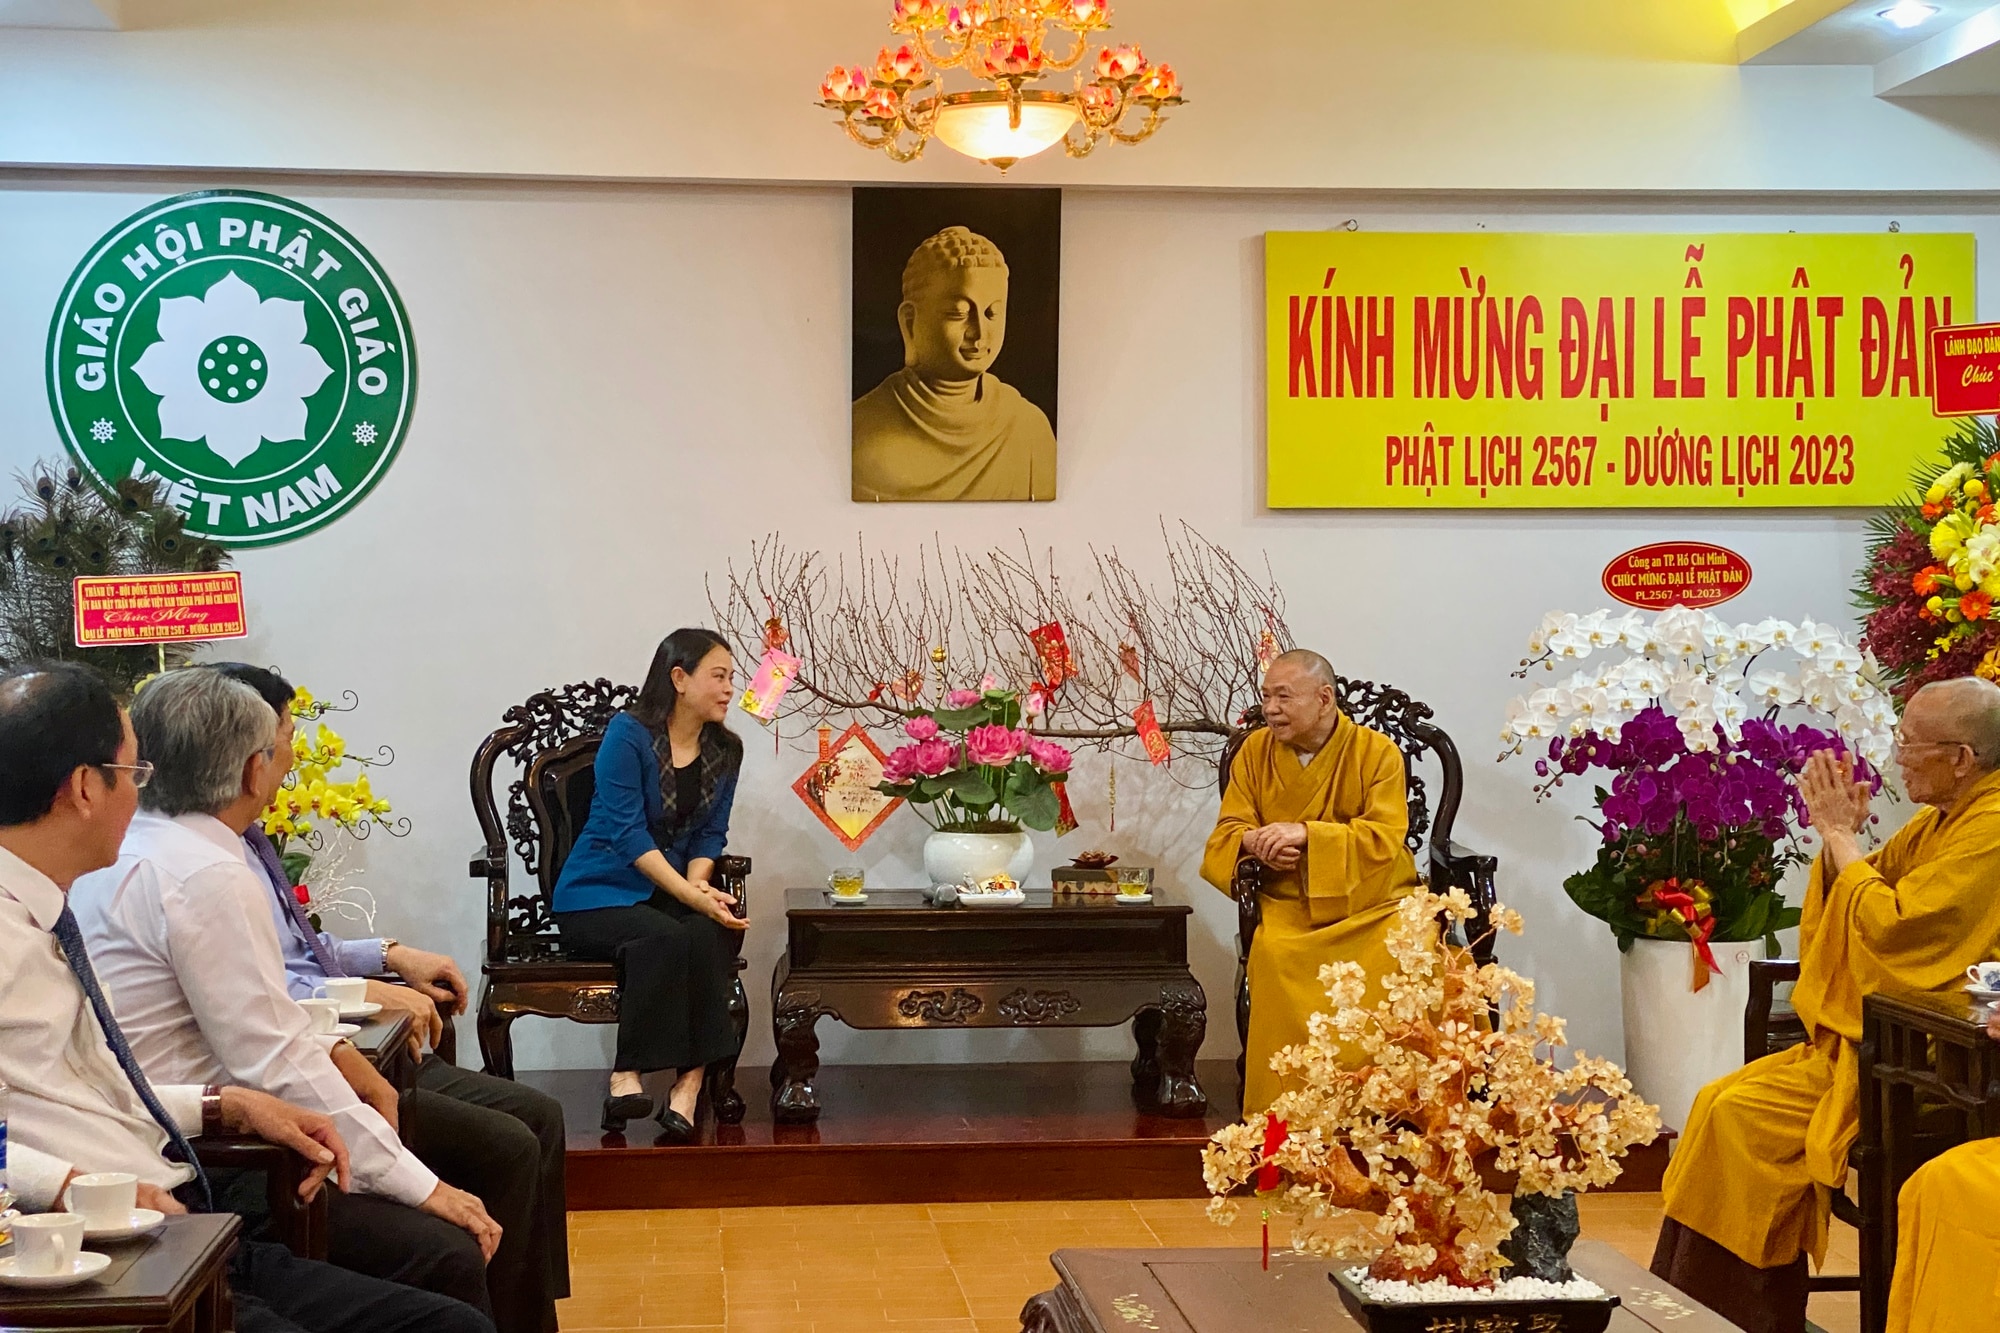 Lãnh đạo Ủy ban T.Ư MTTQ Việt Nam chúc mừng đại lễ Phật đản tại TP.HCM - Ảnh 1.